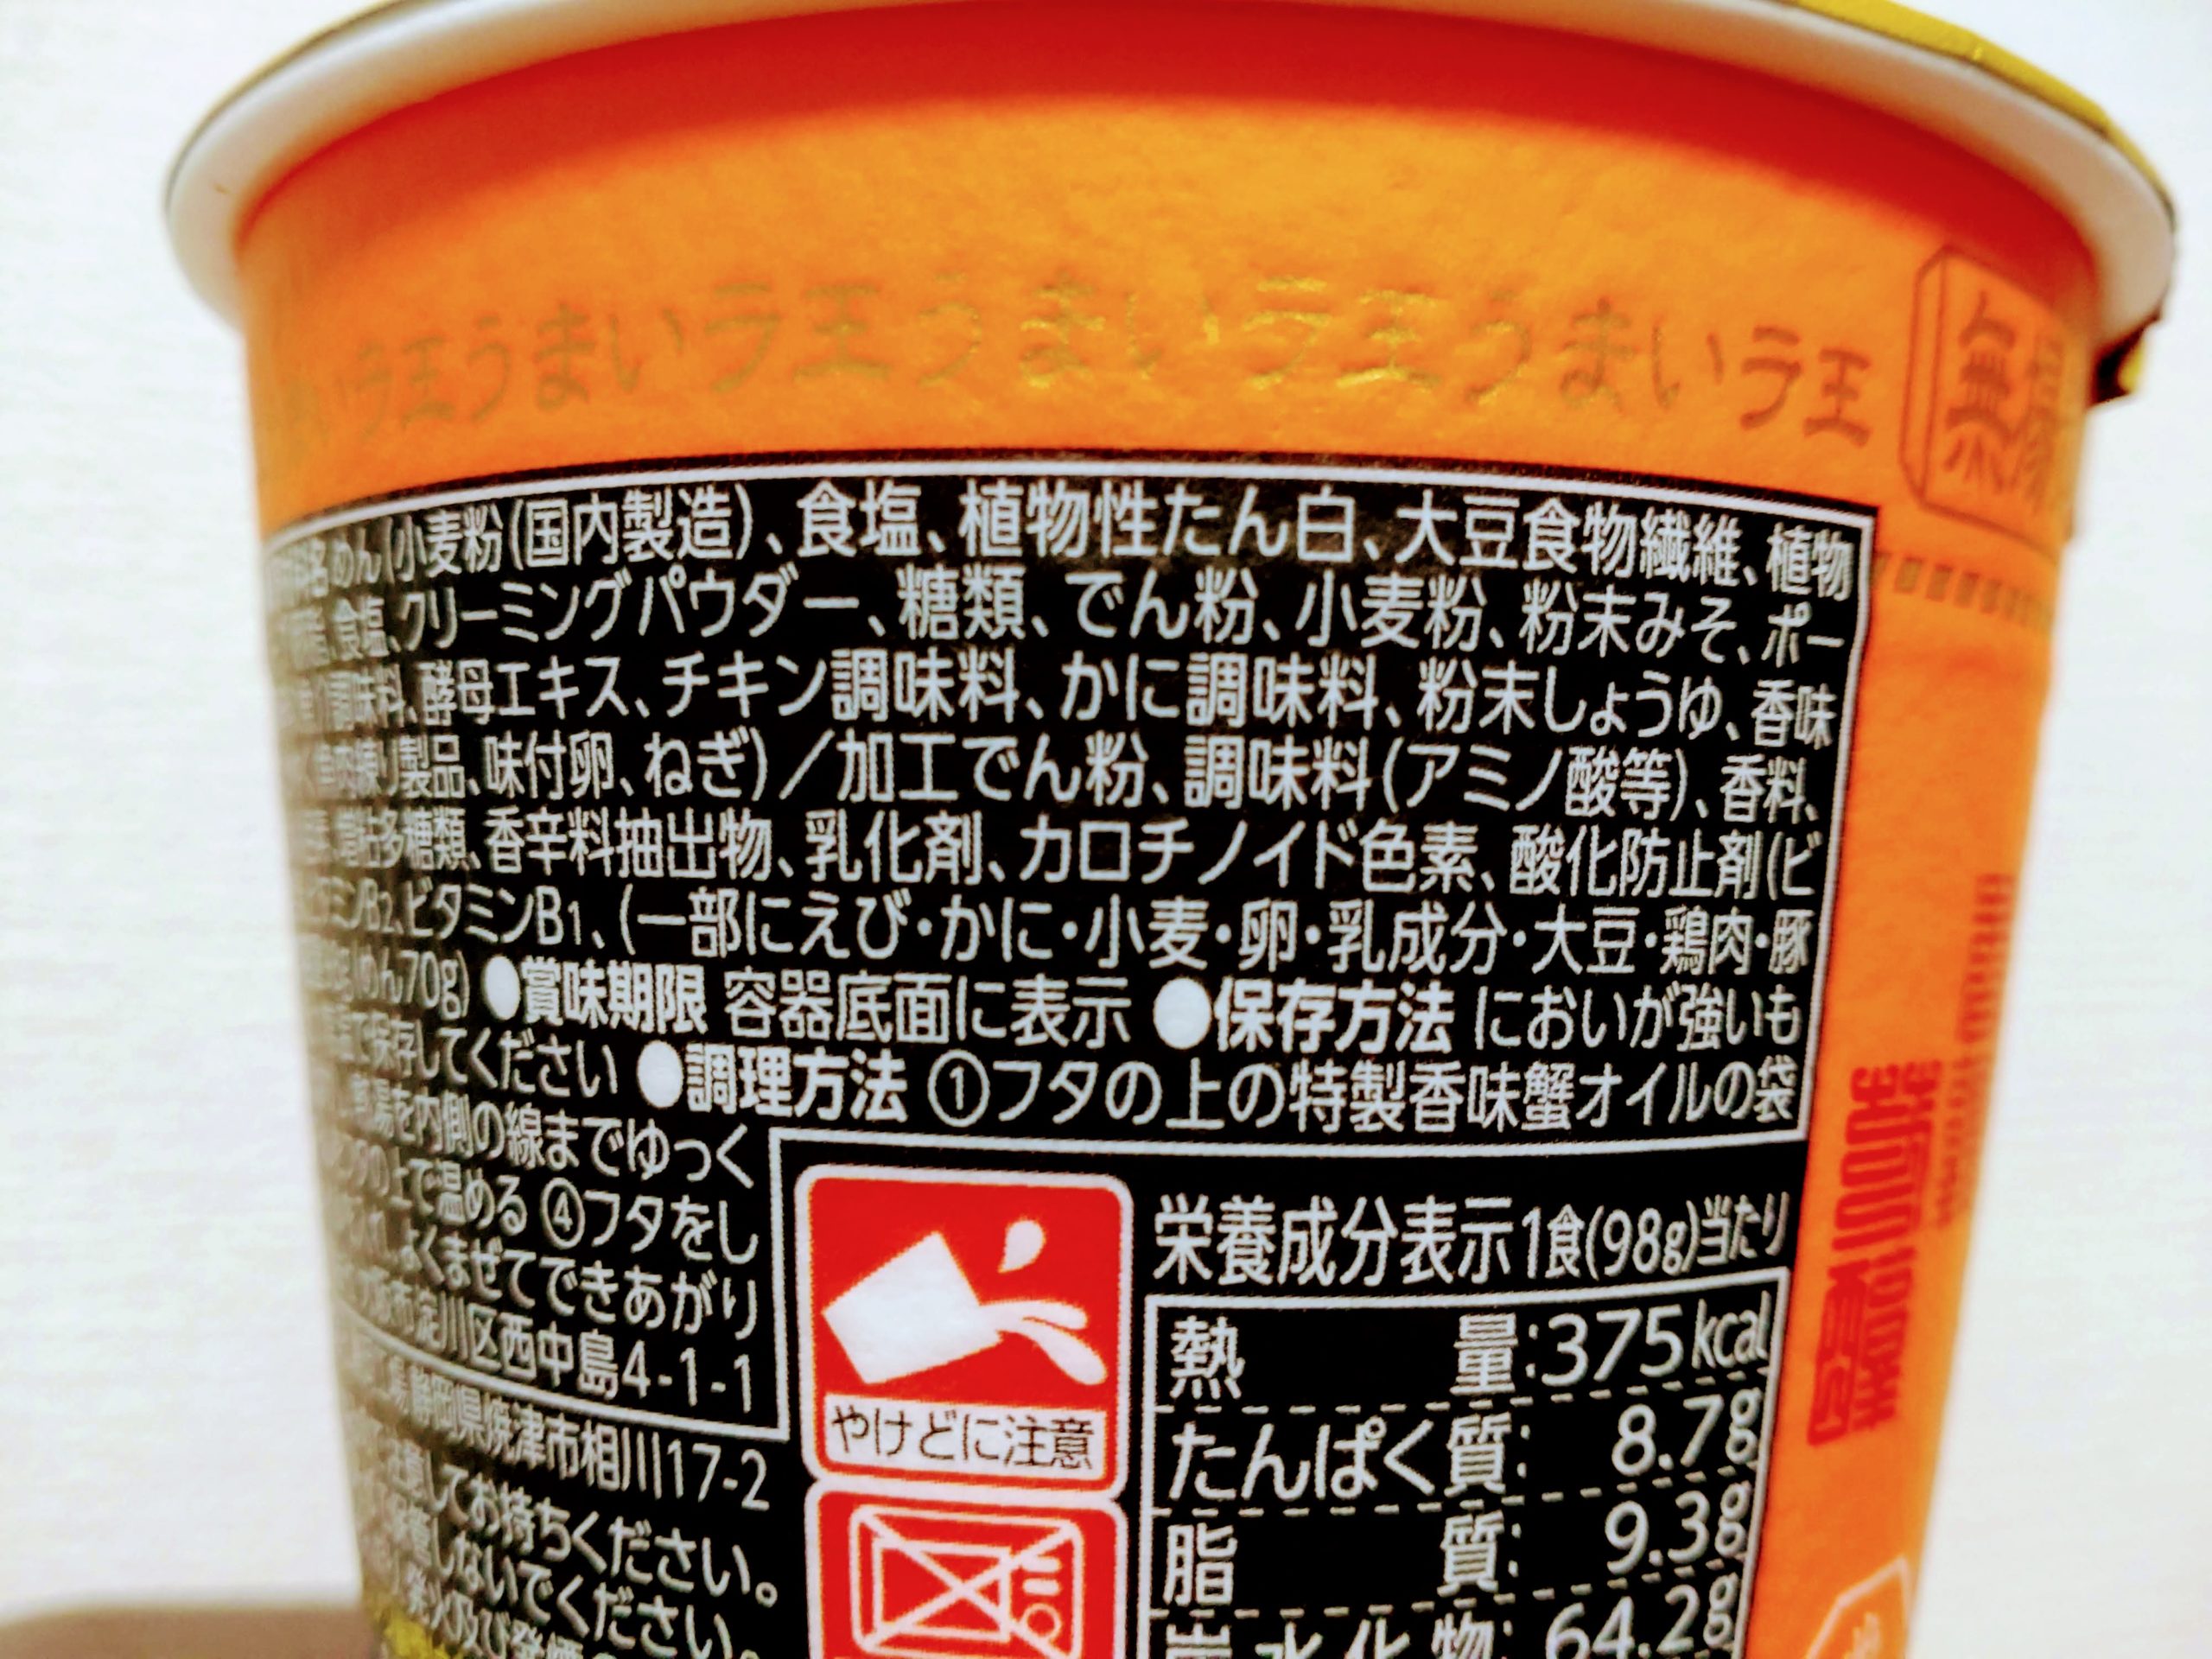 日清ラ王 蟹と味噌の食品表示